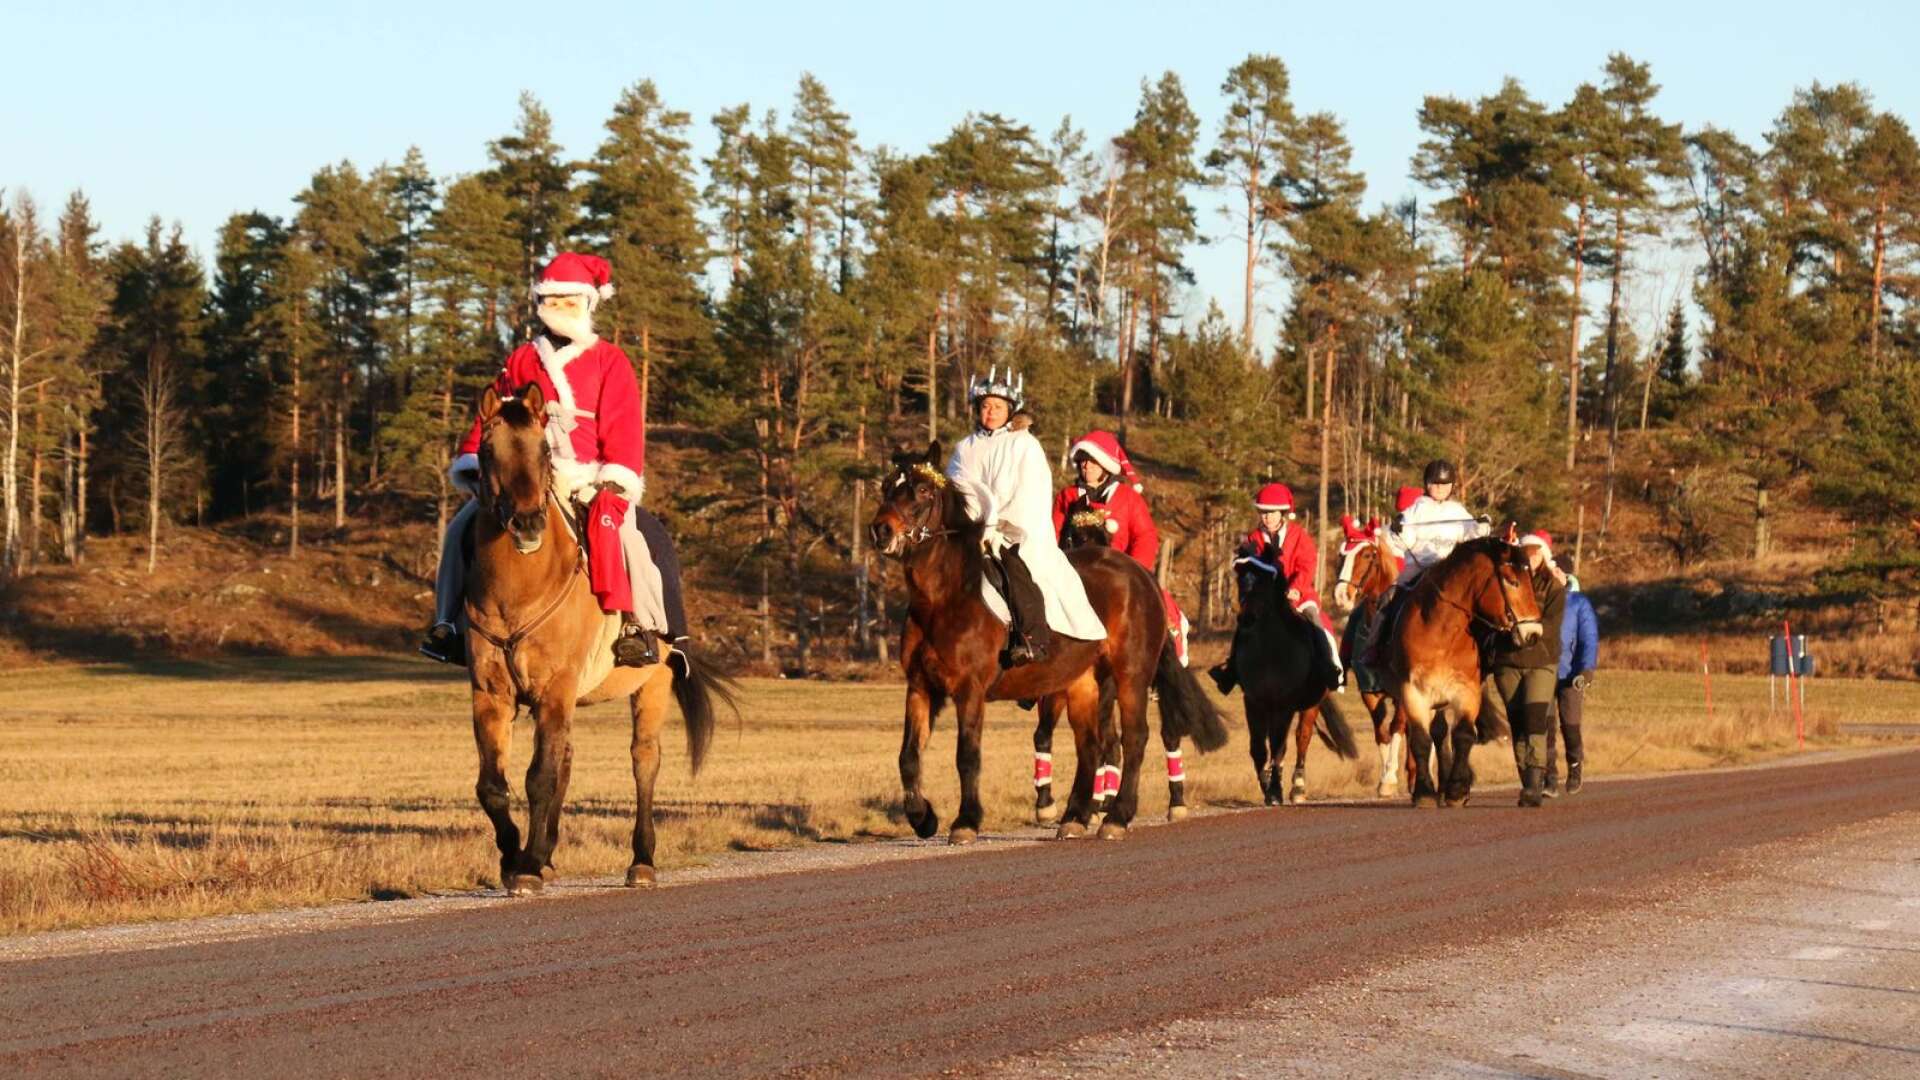 Den charmiga paraden med julpyntade hästar och ryttare anlände till Bölevallen.